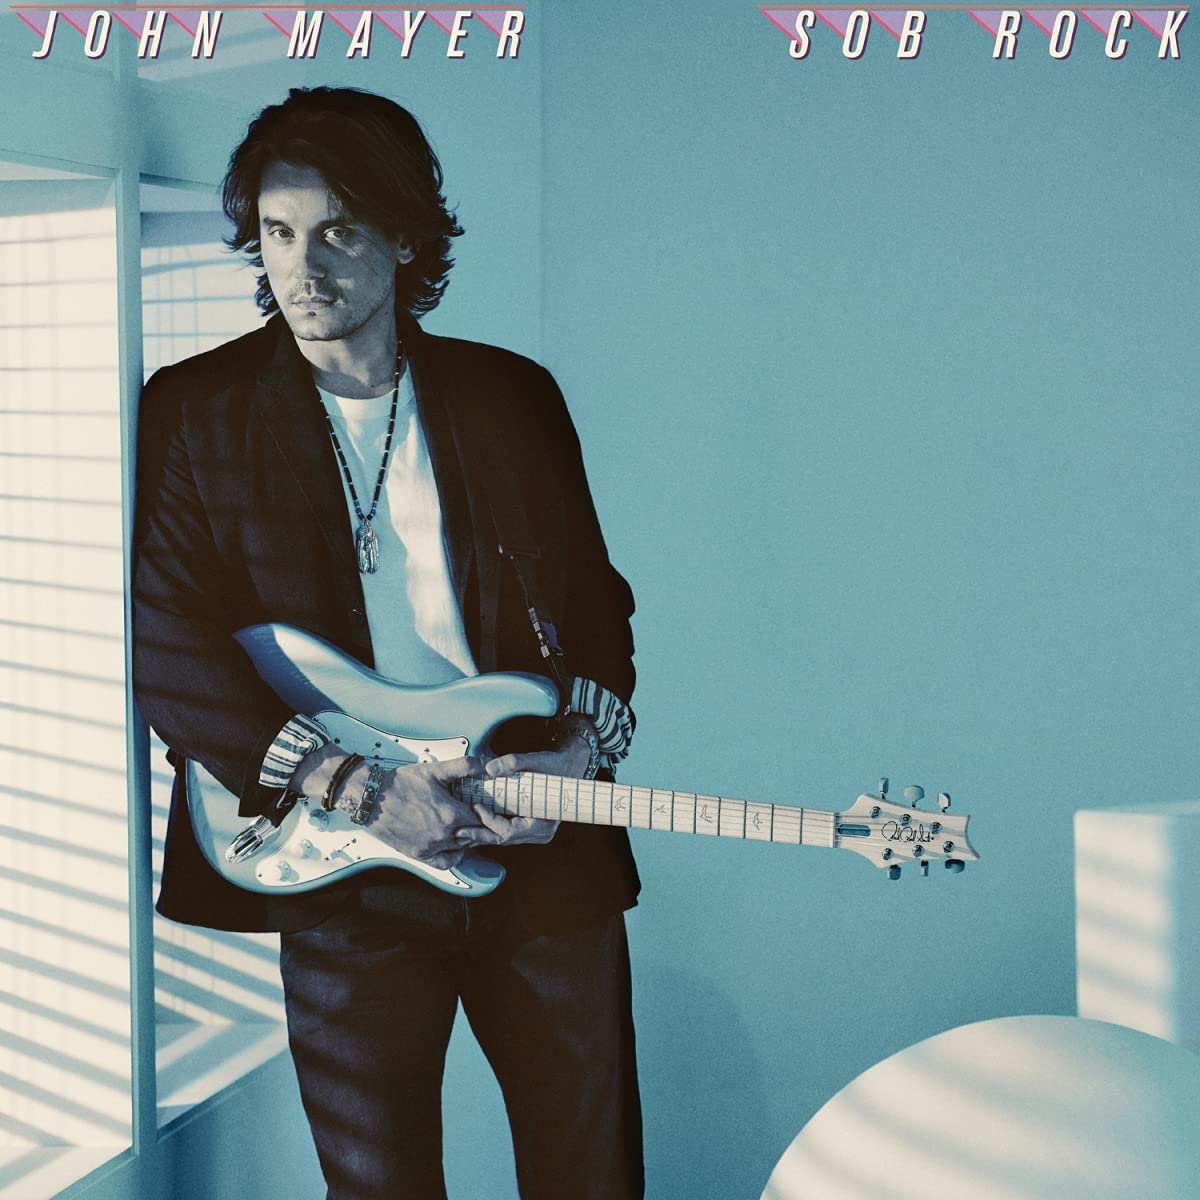 John Mayer - Sob Rock (Vinyl LP)